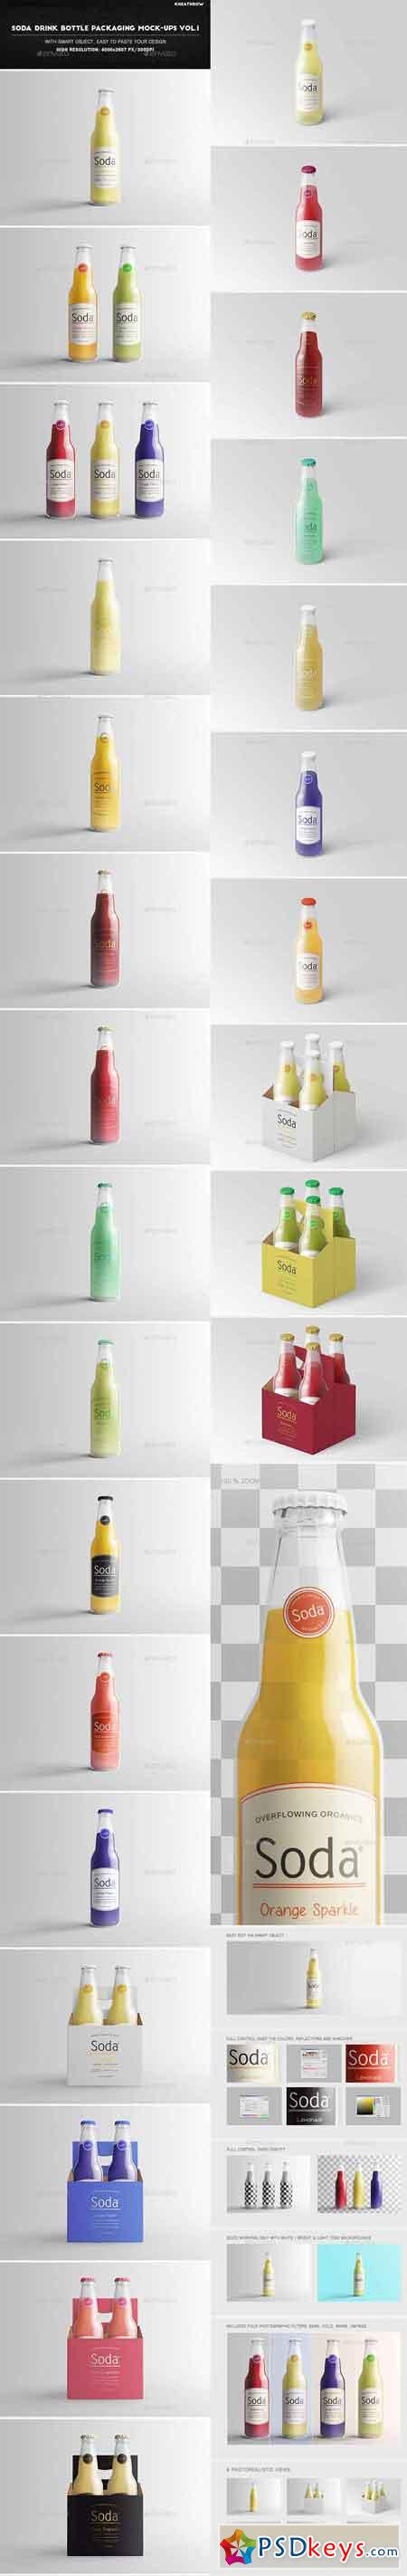 Soda Drink Bottle Packaging Mock-Ups Vol.1 20258084